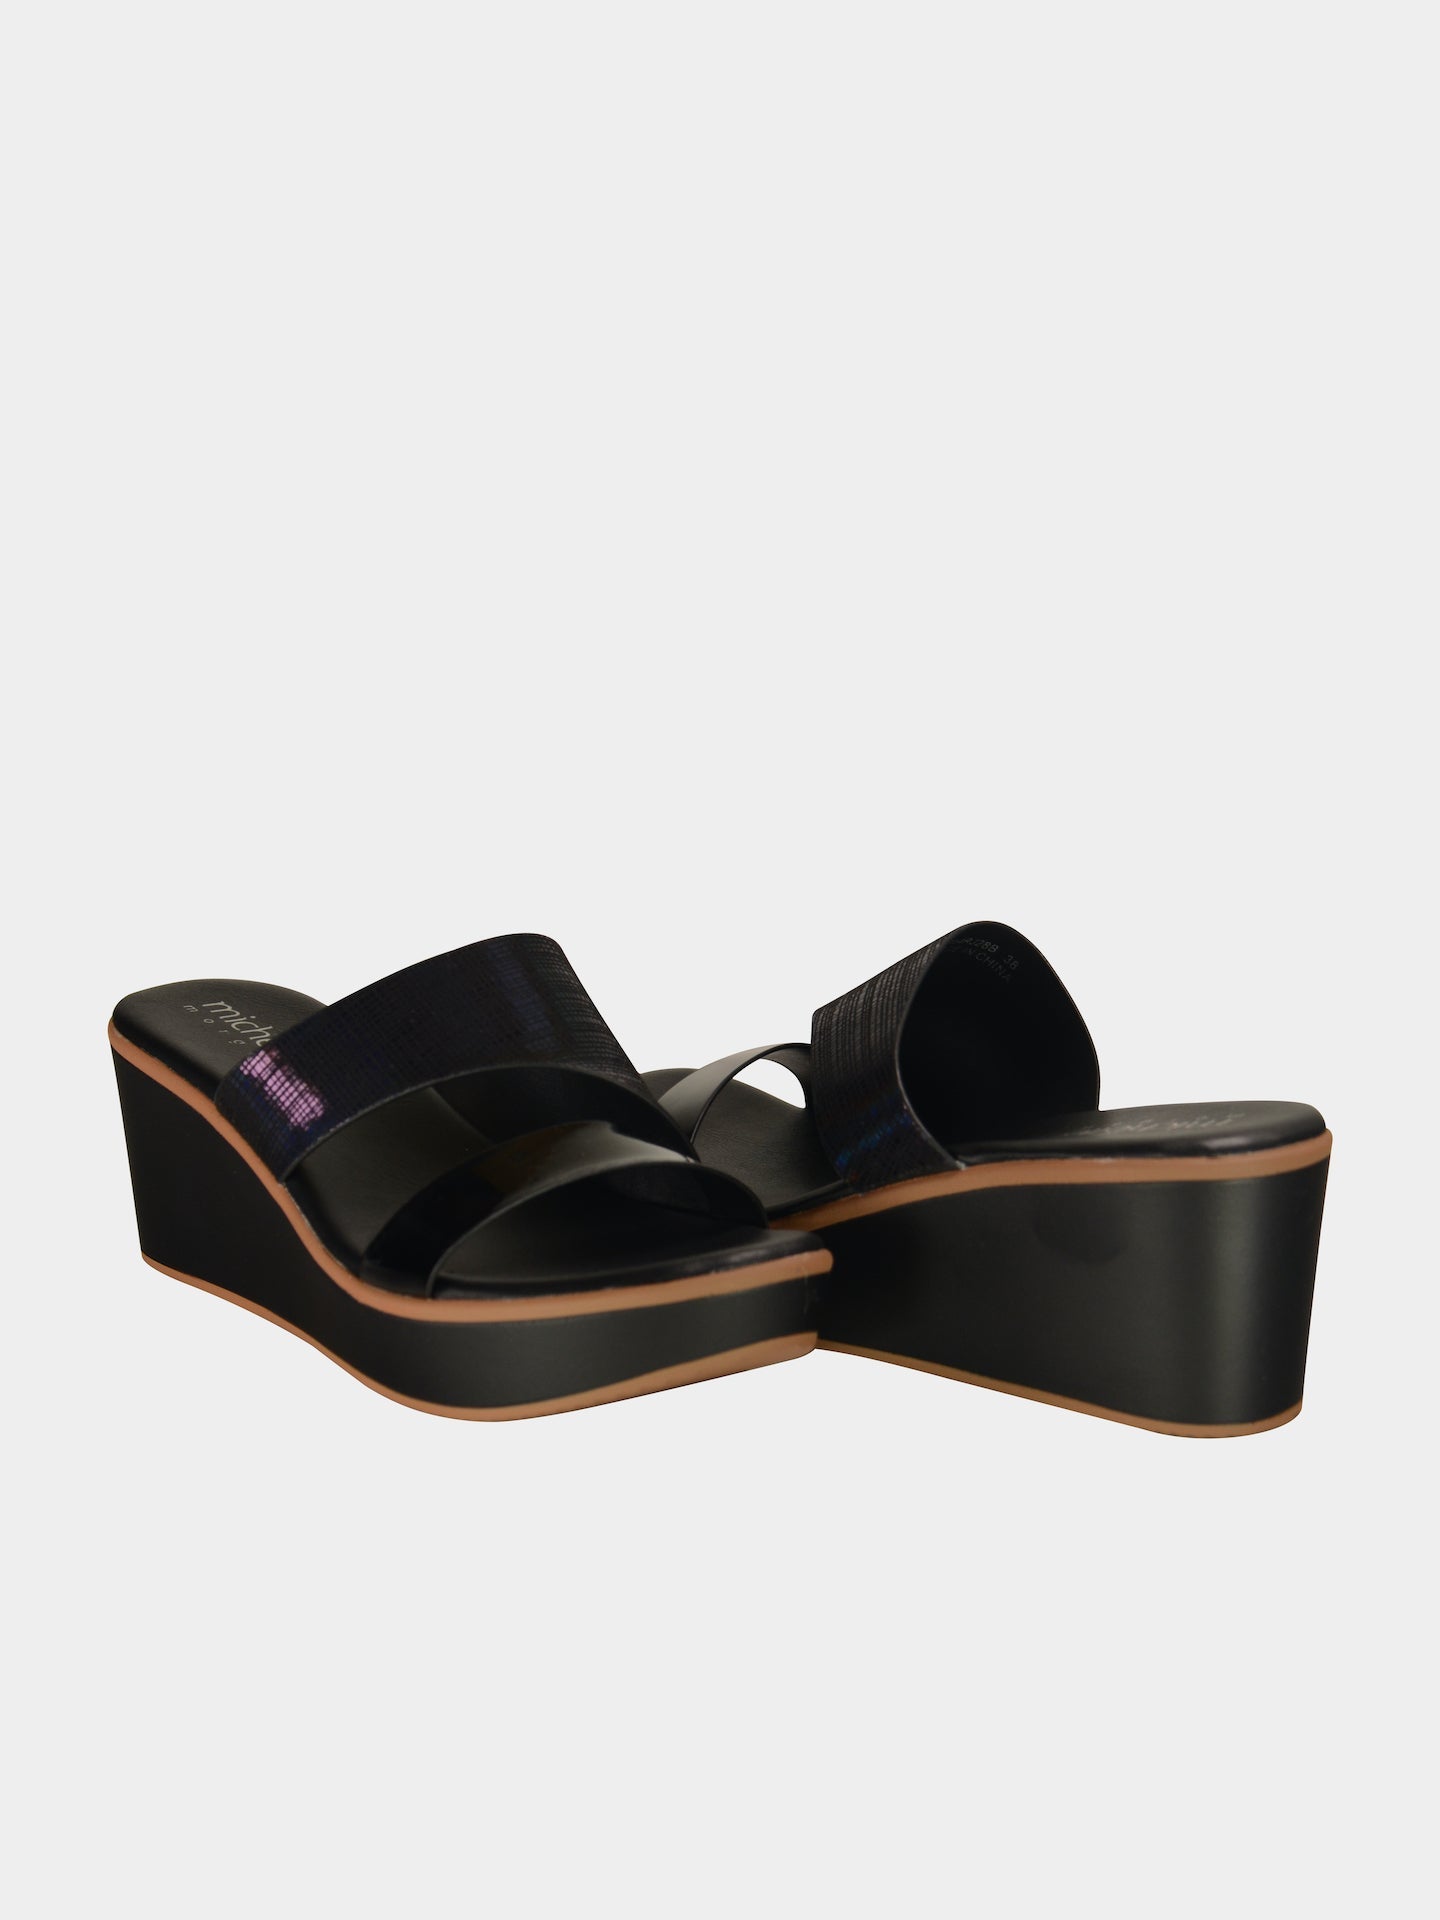 Michelle Morgan 914RJ28B Women's Wedge Sandals #color_Black